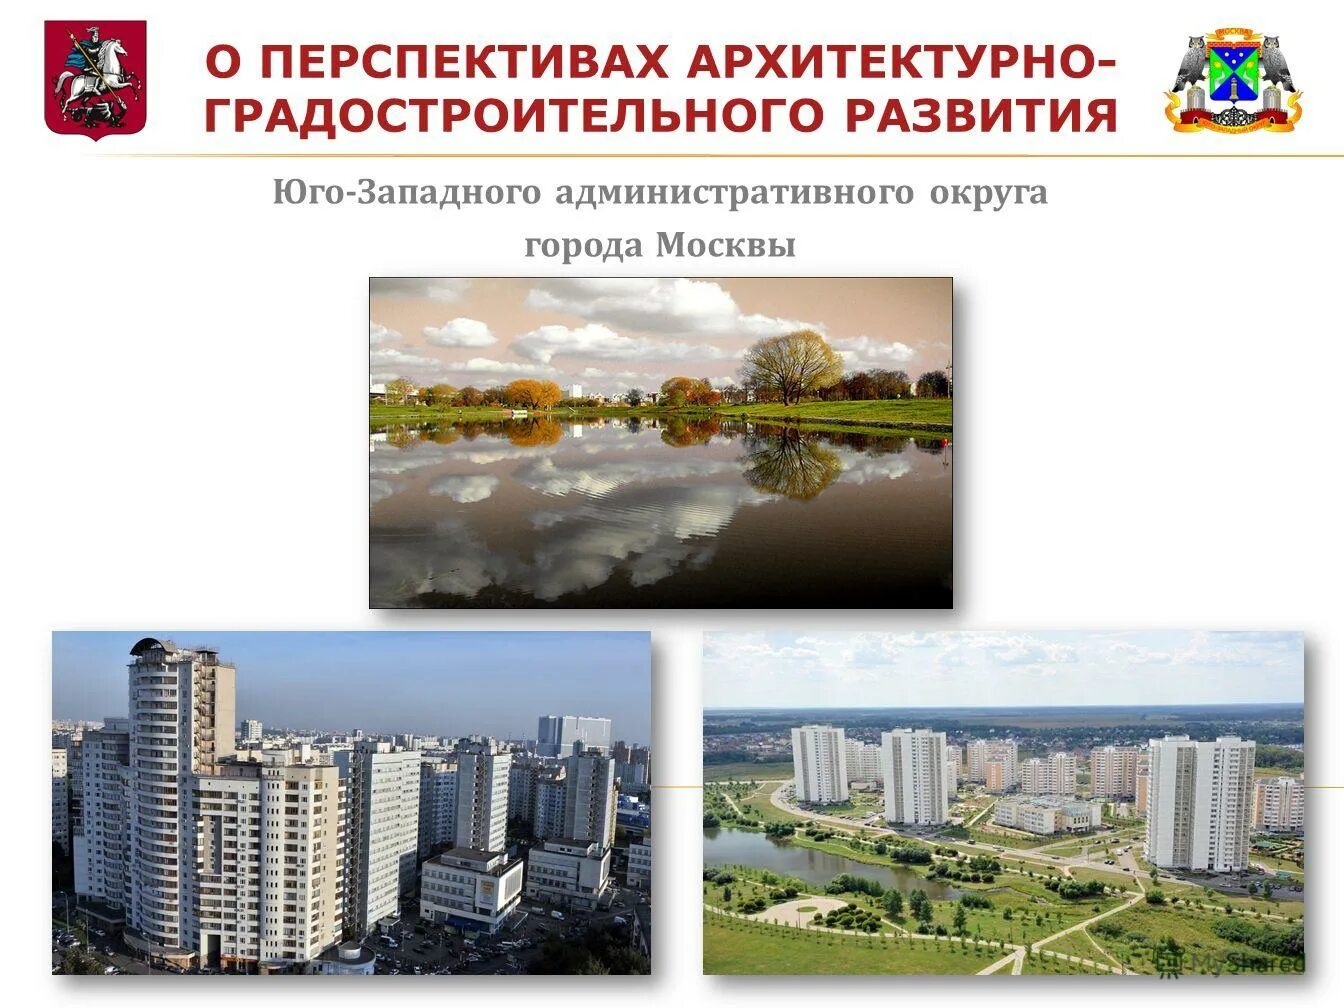 Министерство градостроительного развития